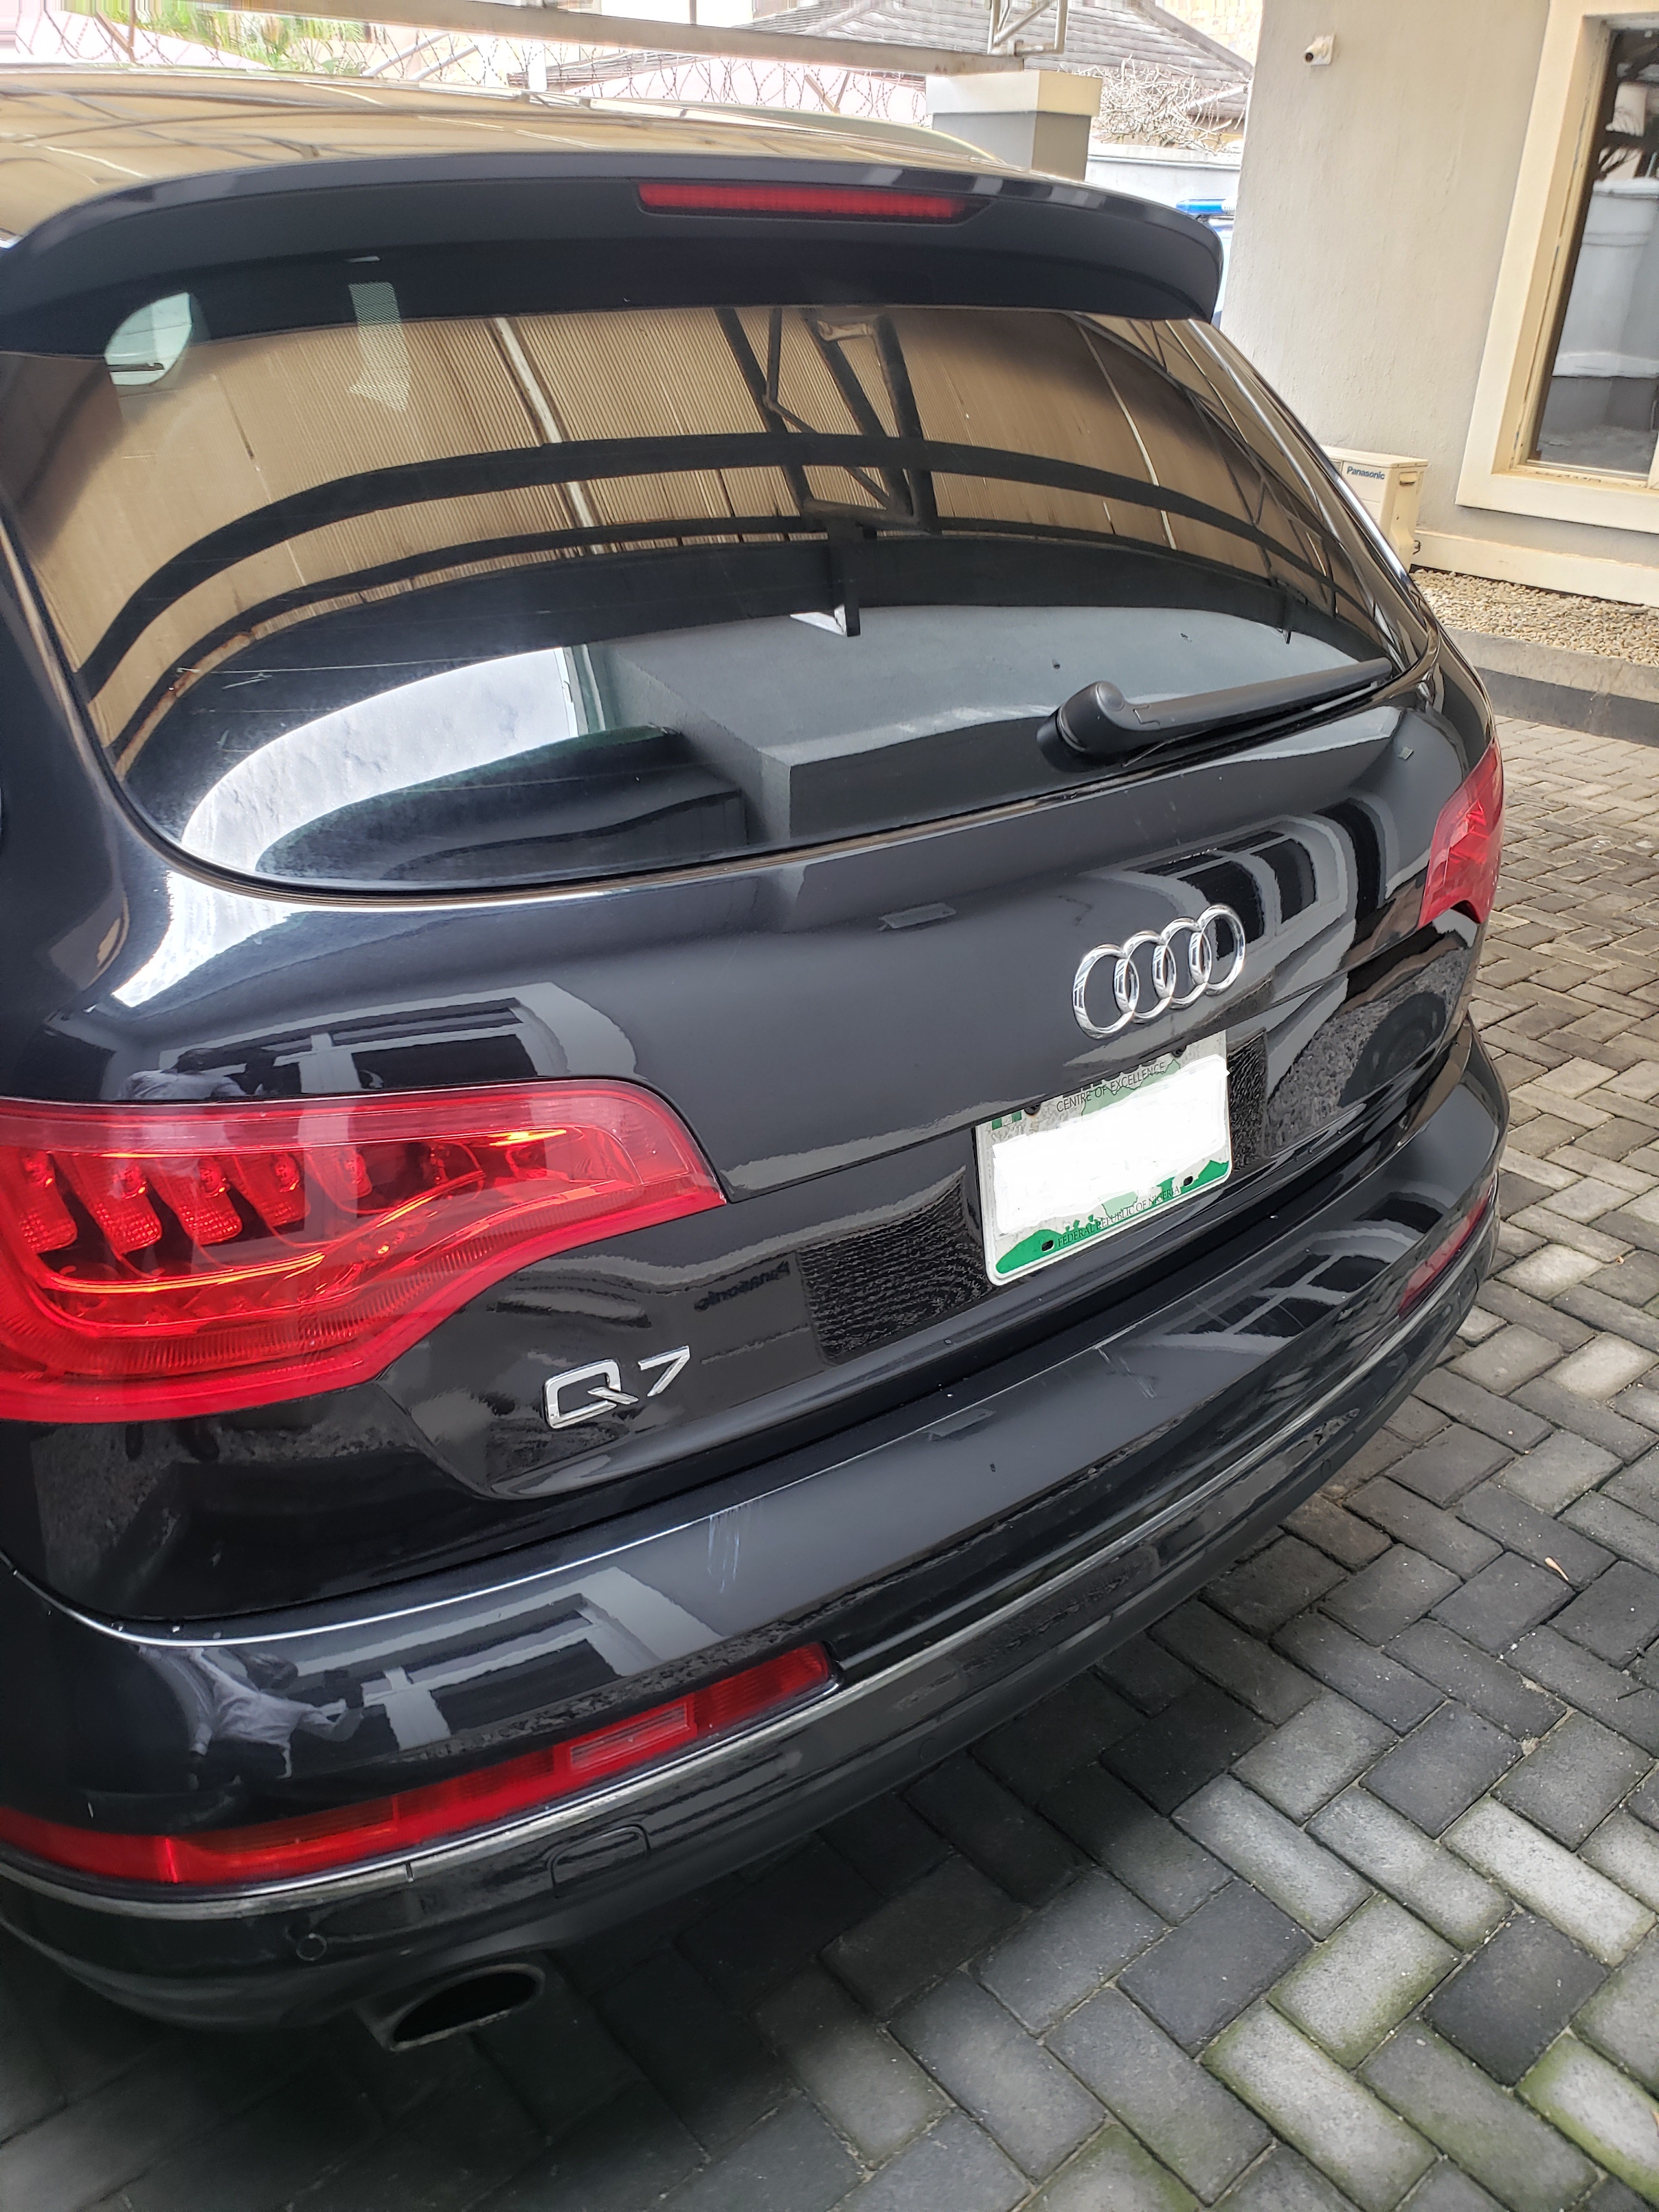 Buy 2014 used Audi Q7 Lagos